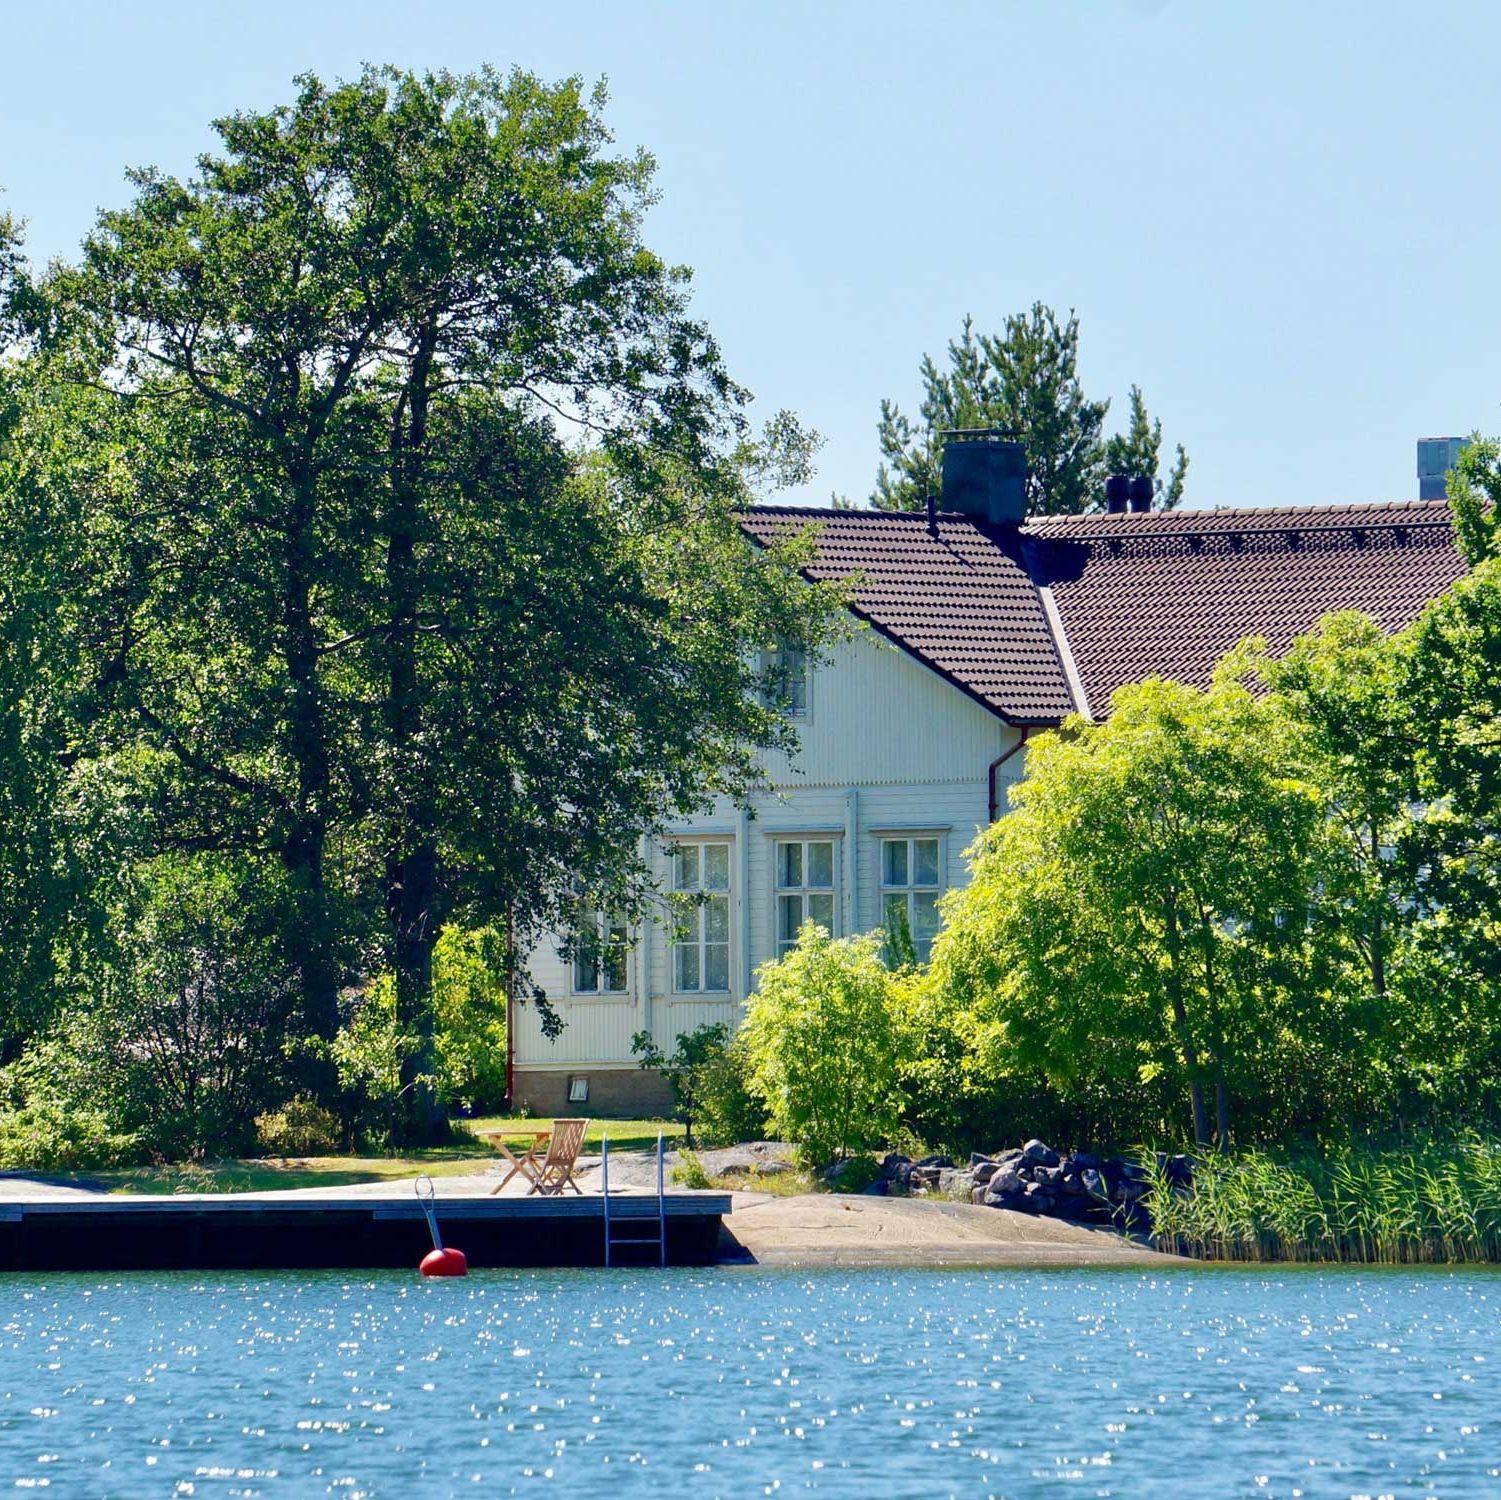 Hyppeis Värdshus vita byggnad, vid havet och omgiven av träd.